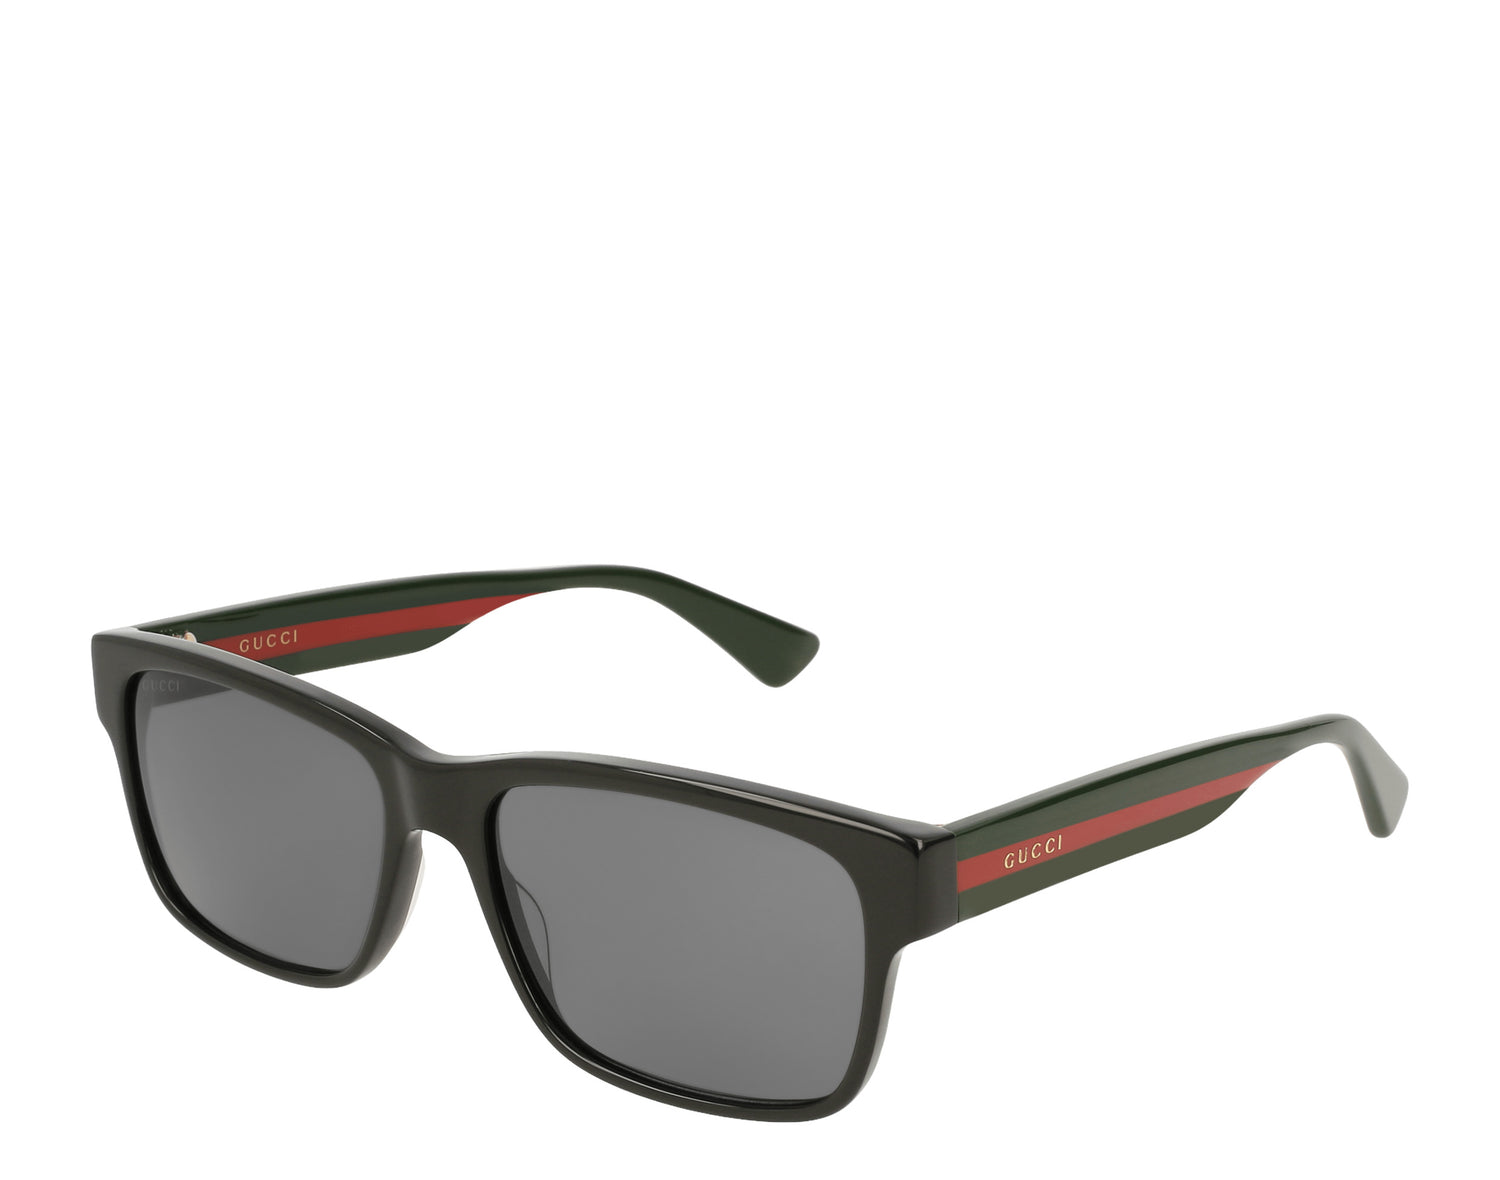 Gucci - Men's Sunglasses